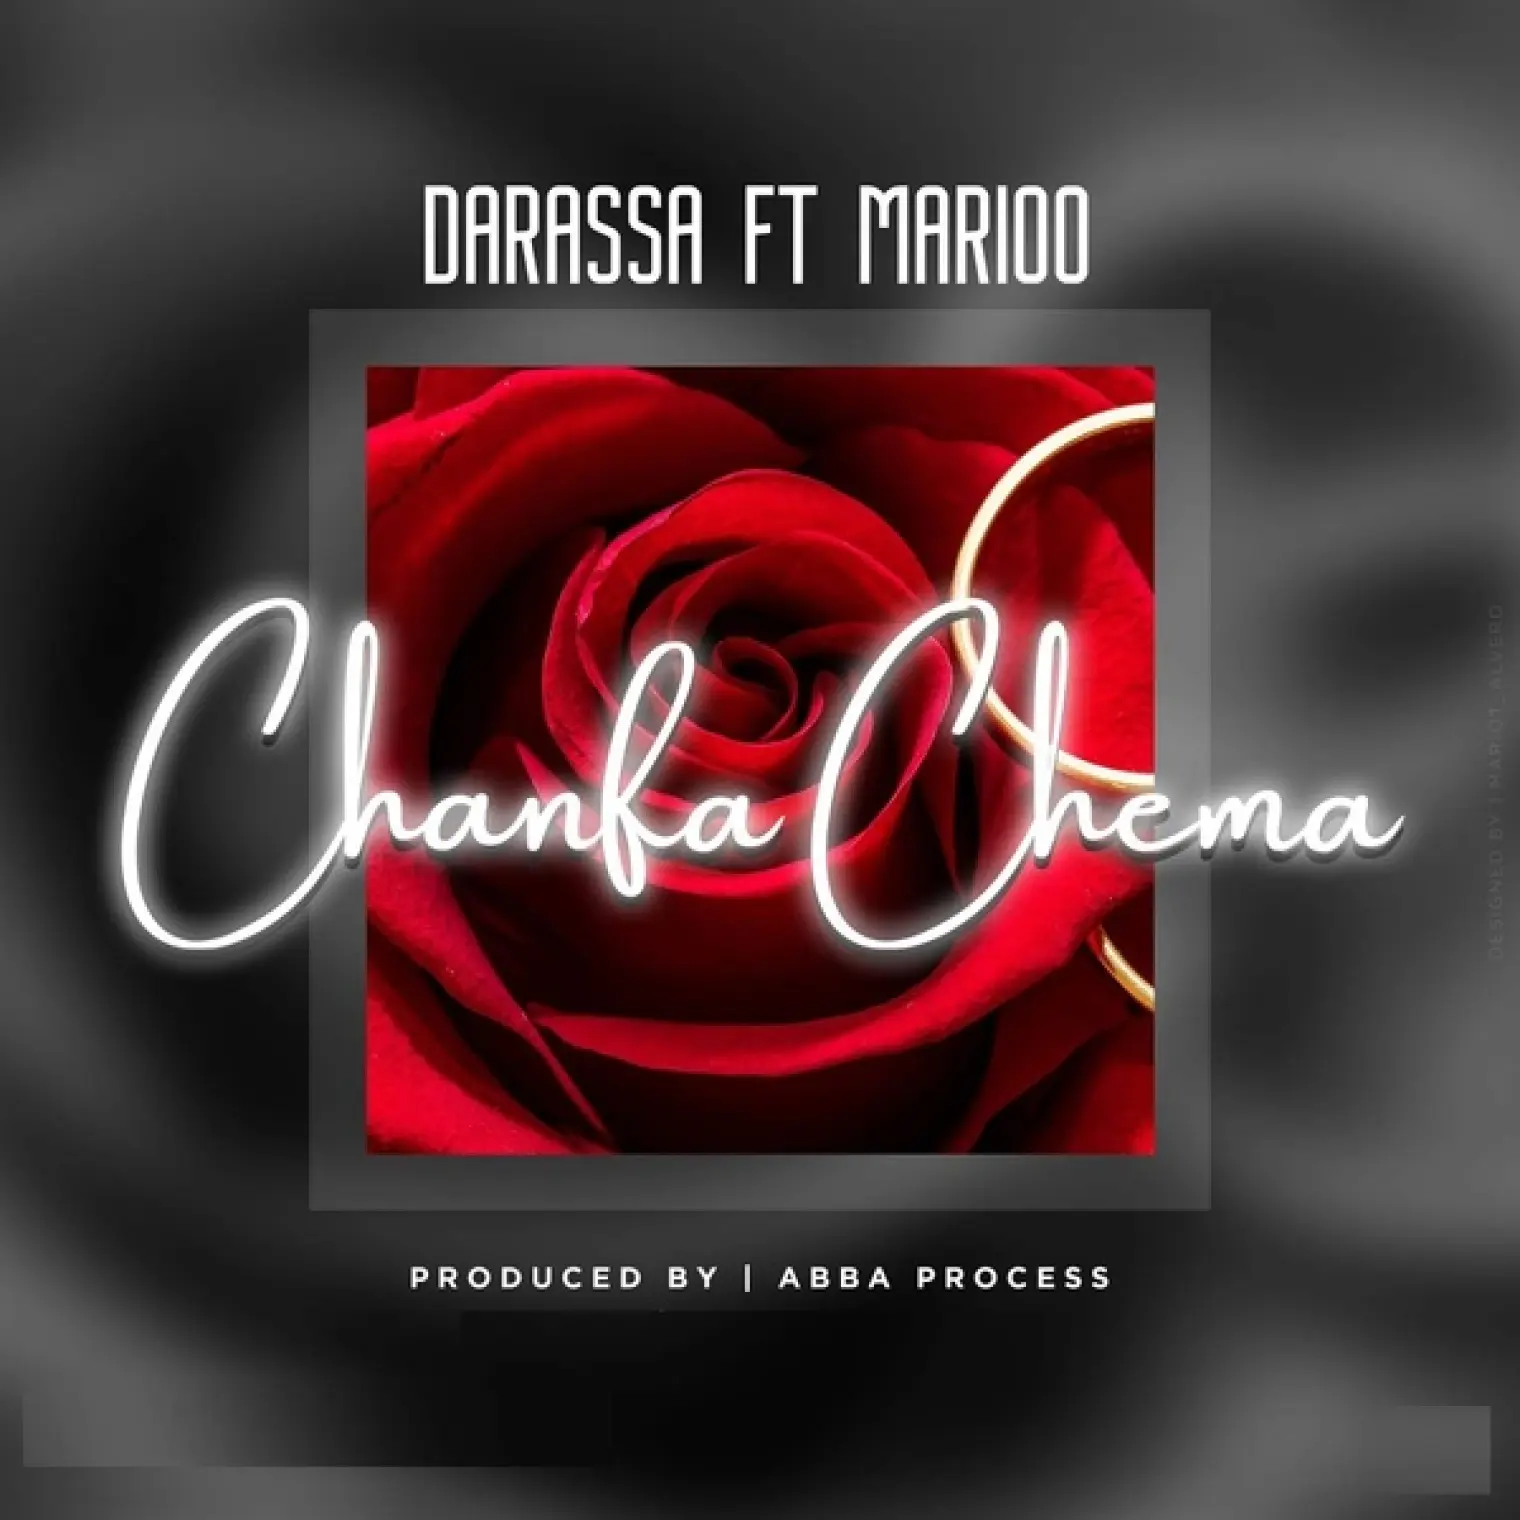 Chanda Chema (feat. Marioo) -  Darassa 